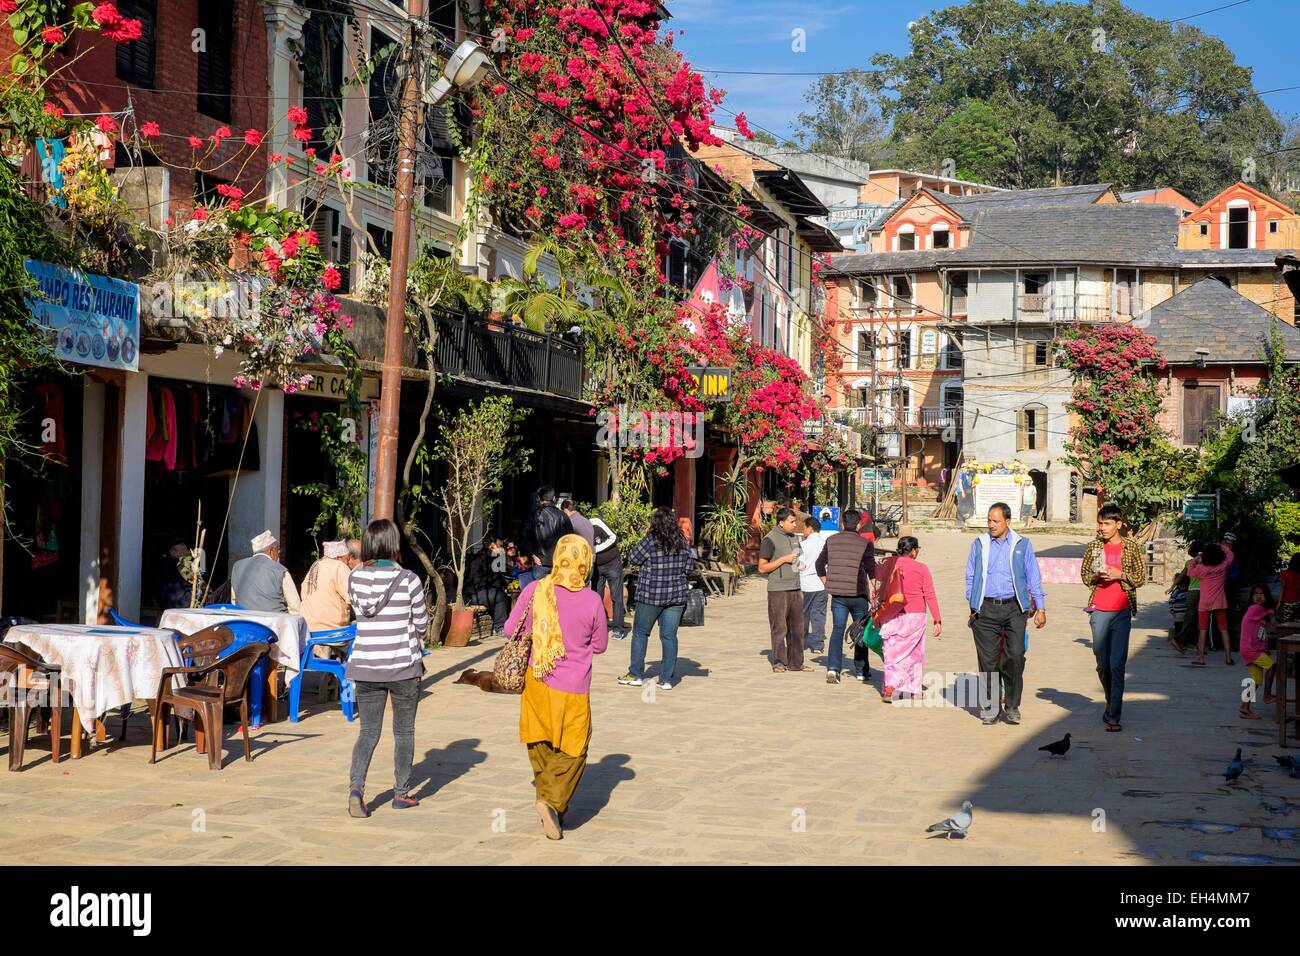 Le Népal, Gandaki zone, Bandipur, un village traditionnel Newar du 18e siècle Banque D'Images